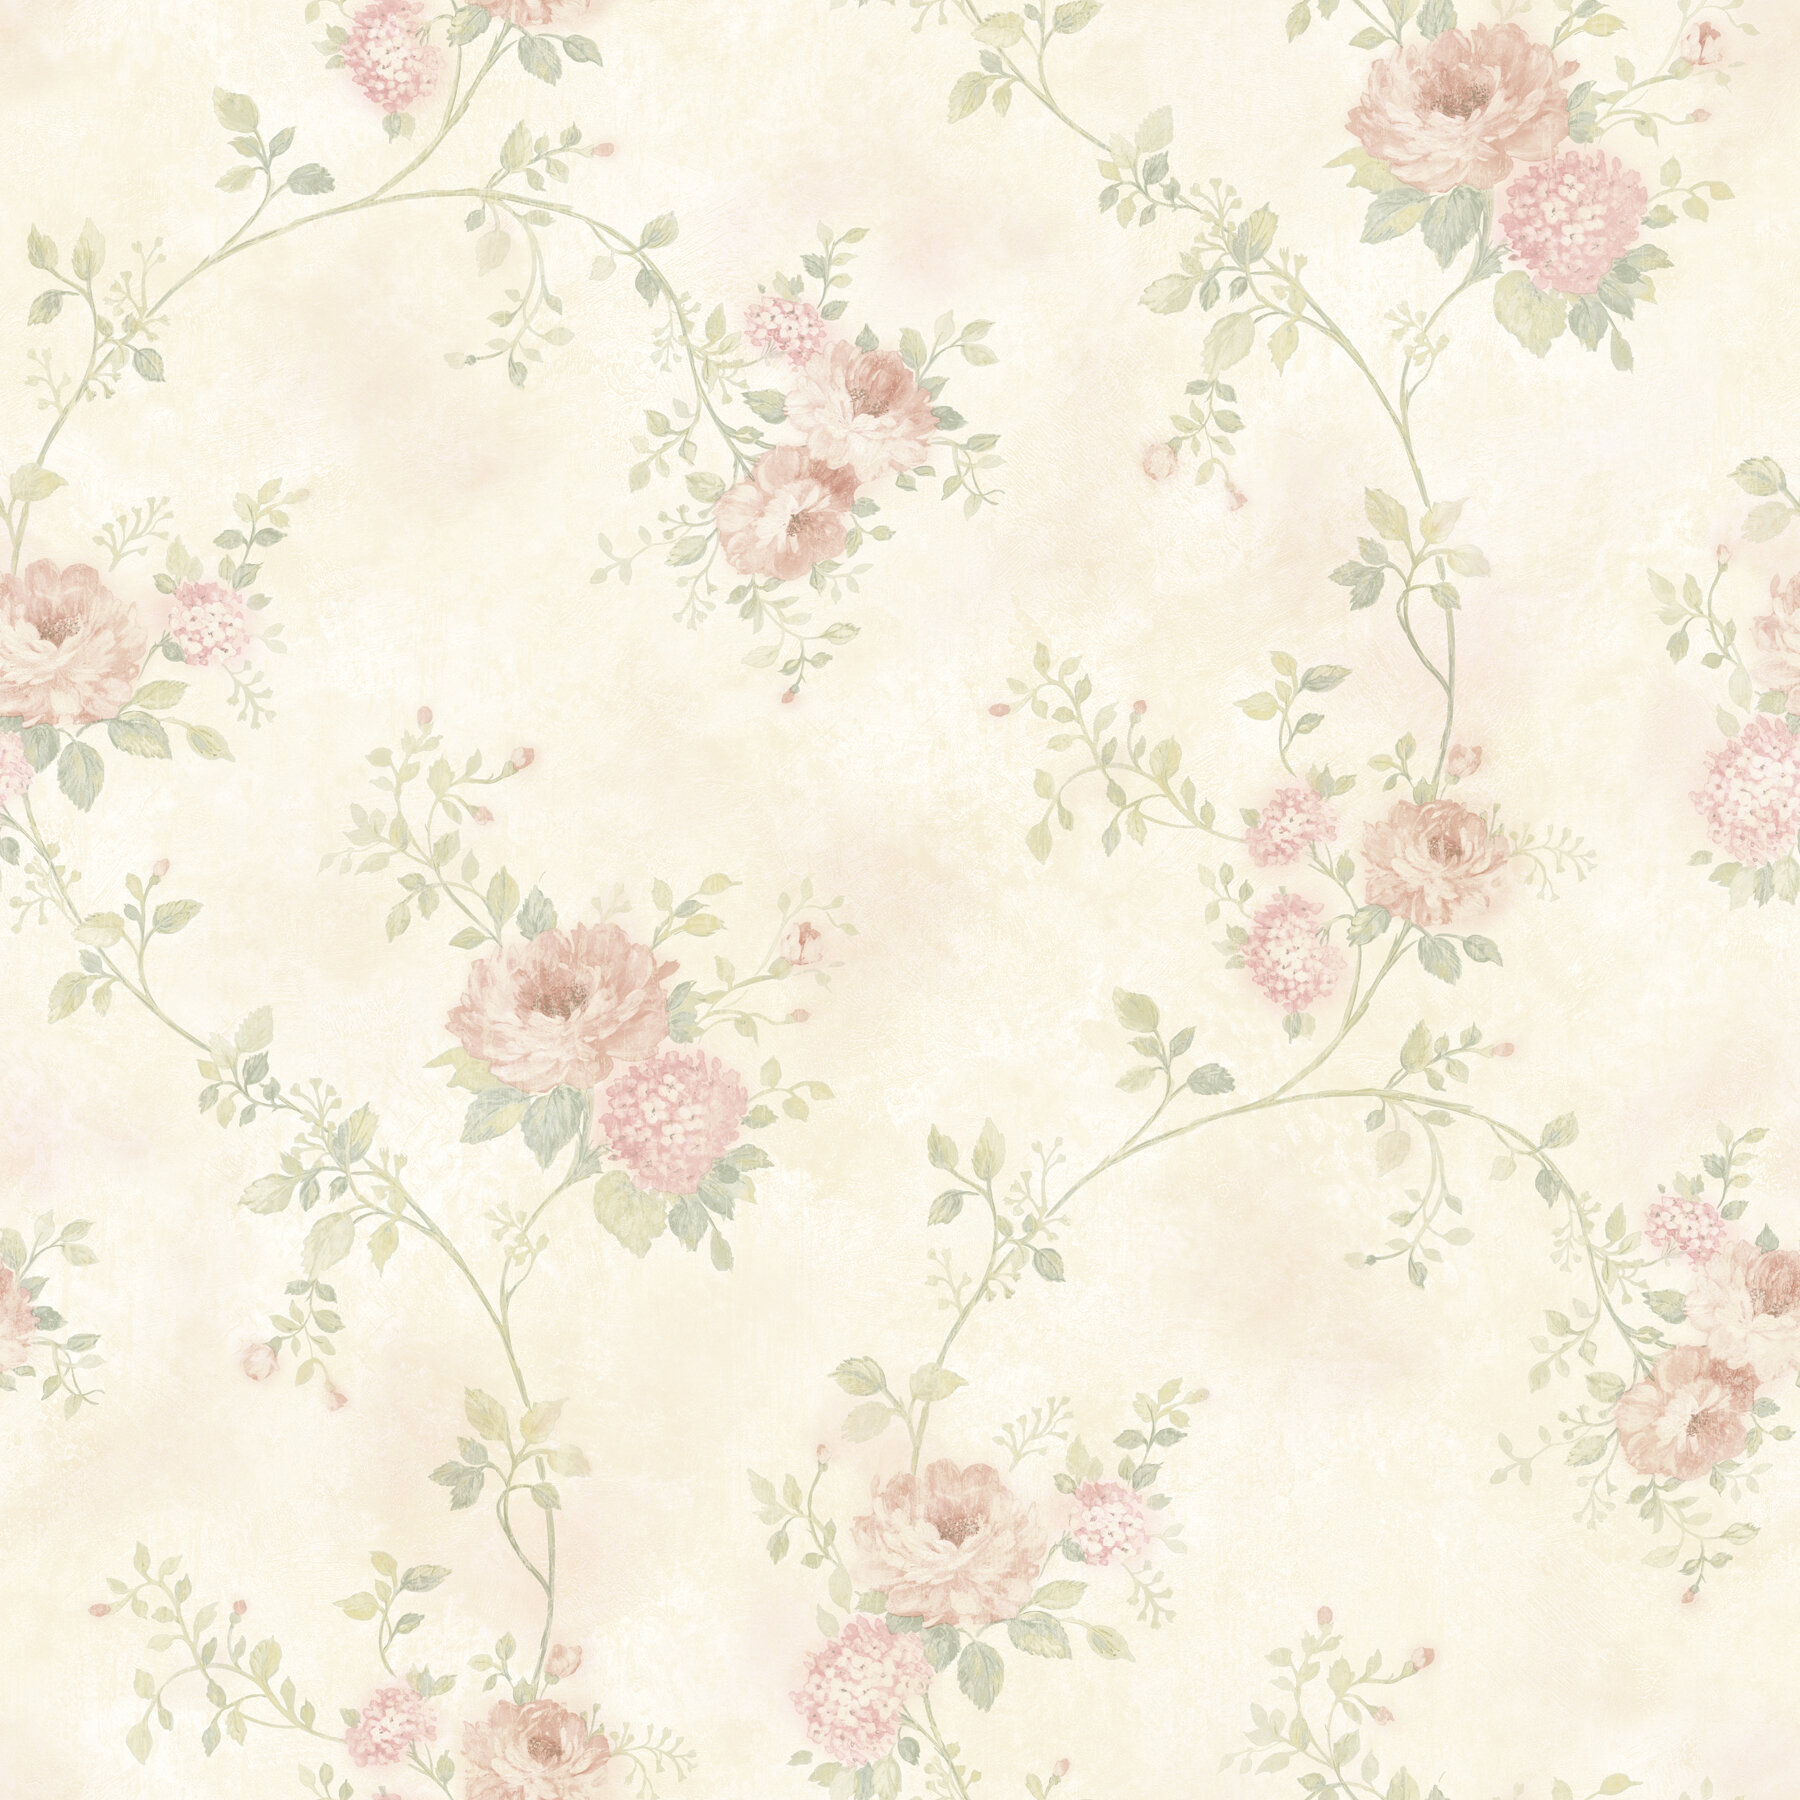 Ophelia & Co. Almeta Floral Wallpaper | Wayfair